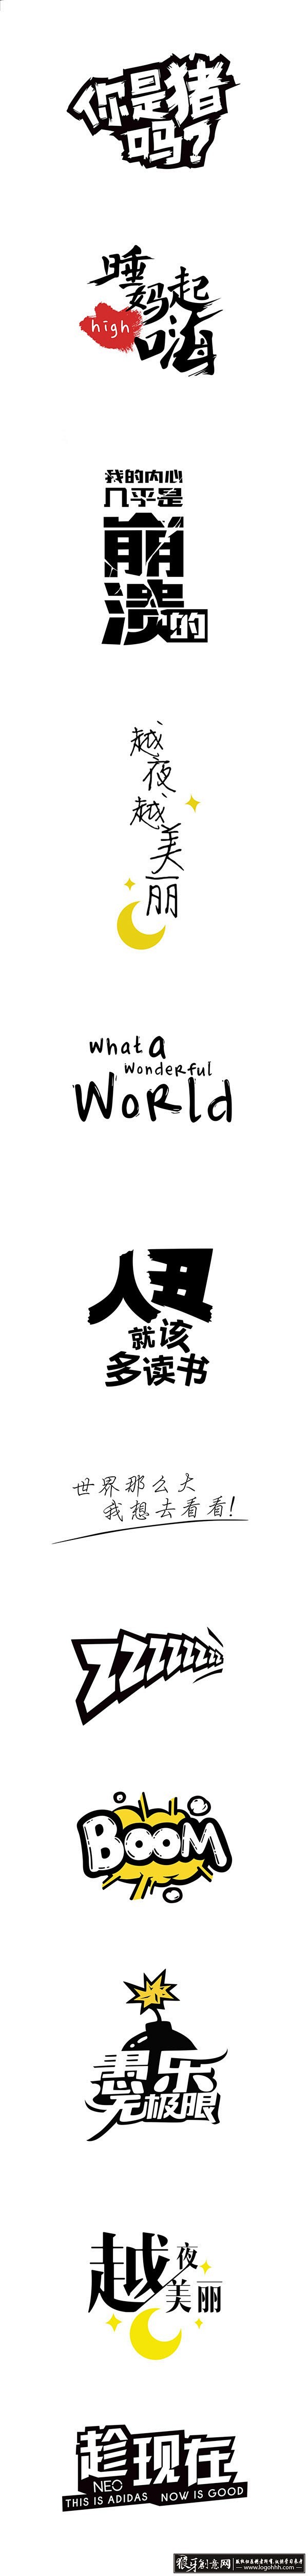 字体设计 创意中文字体组合设计欣赏 优秀...